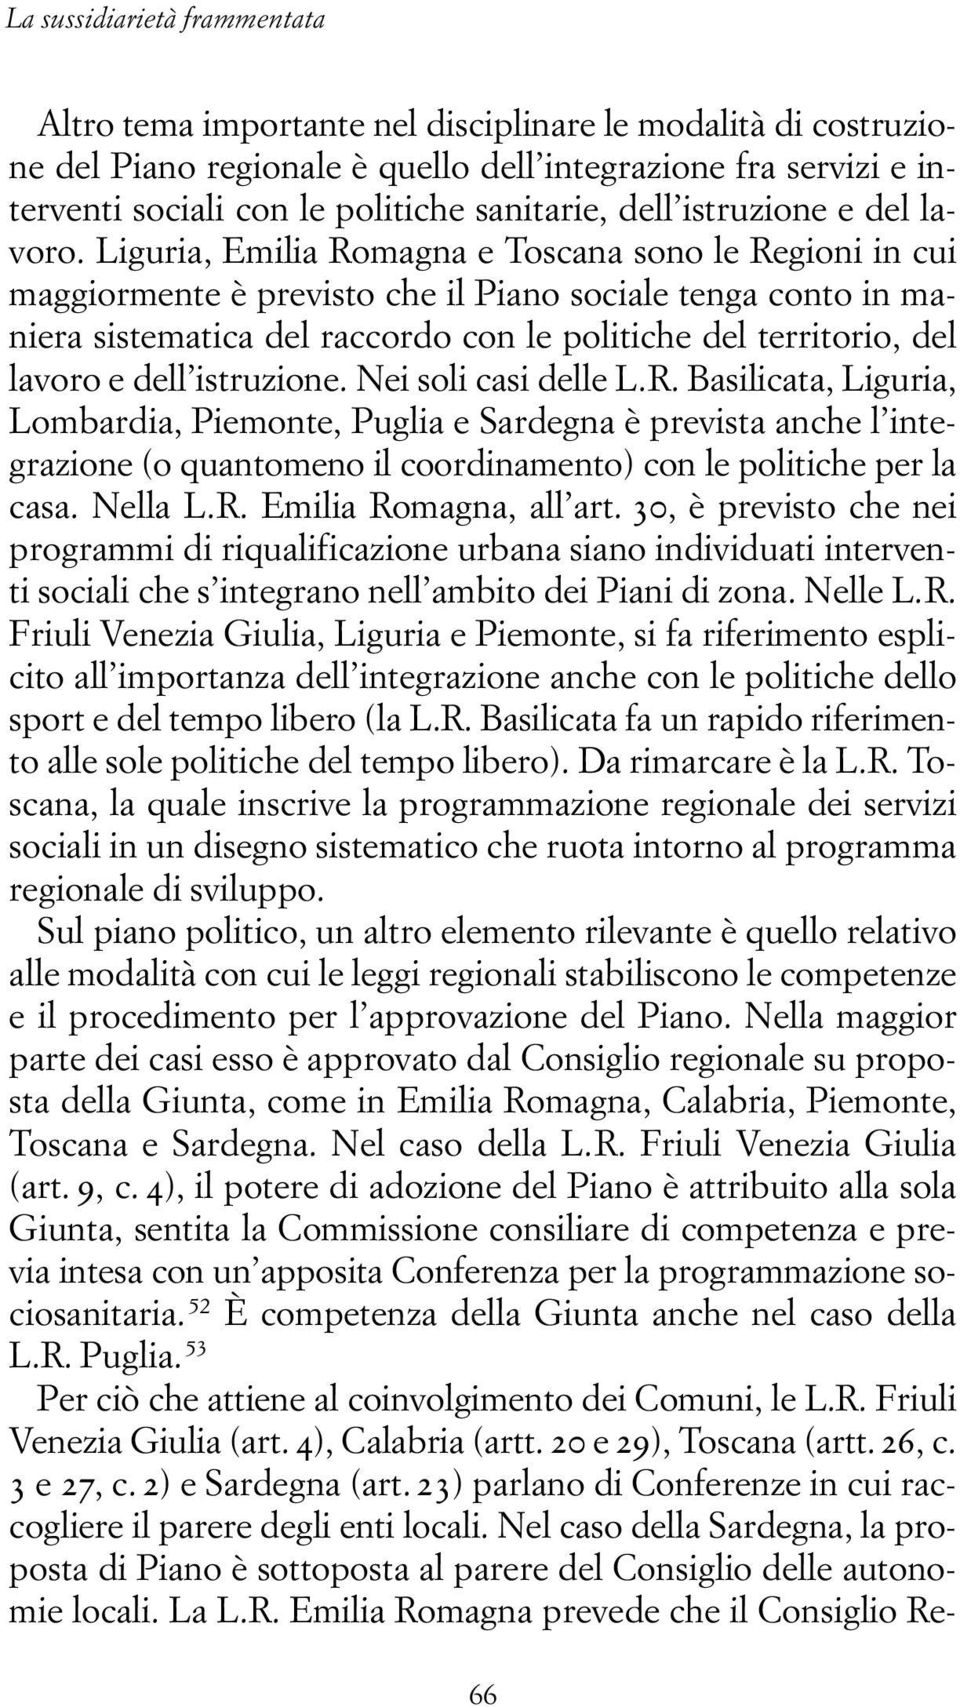 Liguria, Emilia Romagna e Toscana sono le Regioni in cui maggiormente è previsto che il Piano sociale tenga conto in maniera sistematica del raccordo con le politiche del territorio, del lavoro e